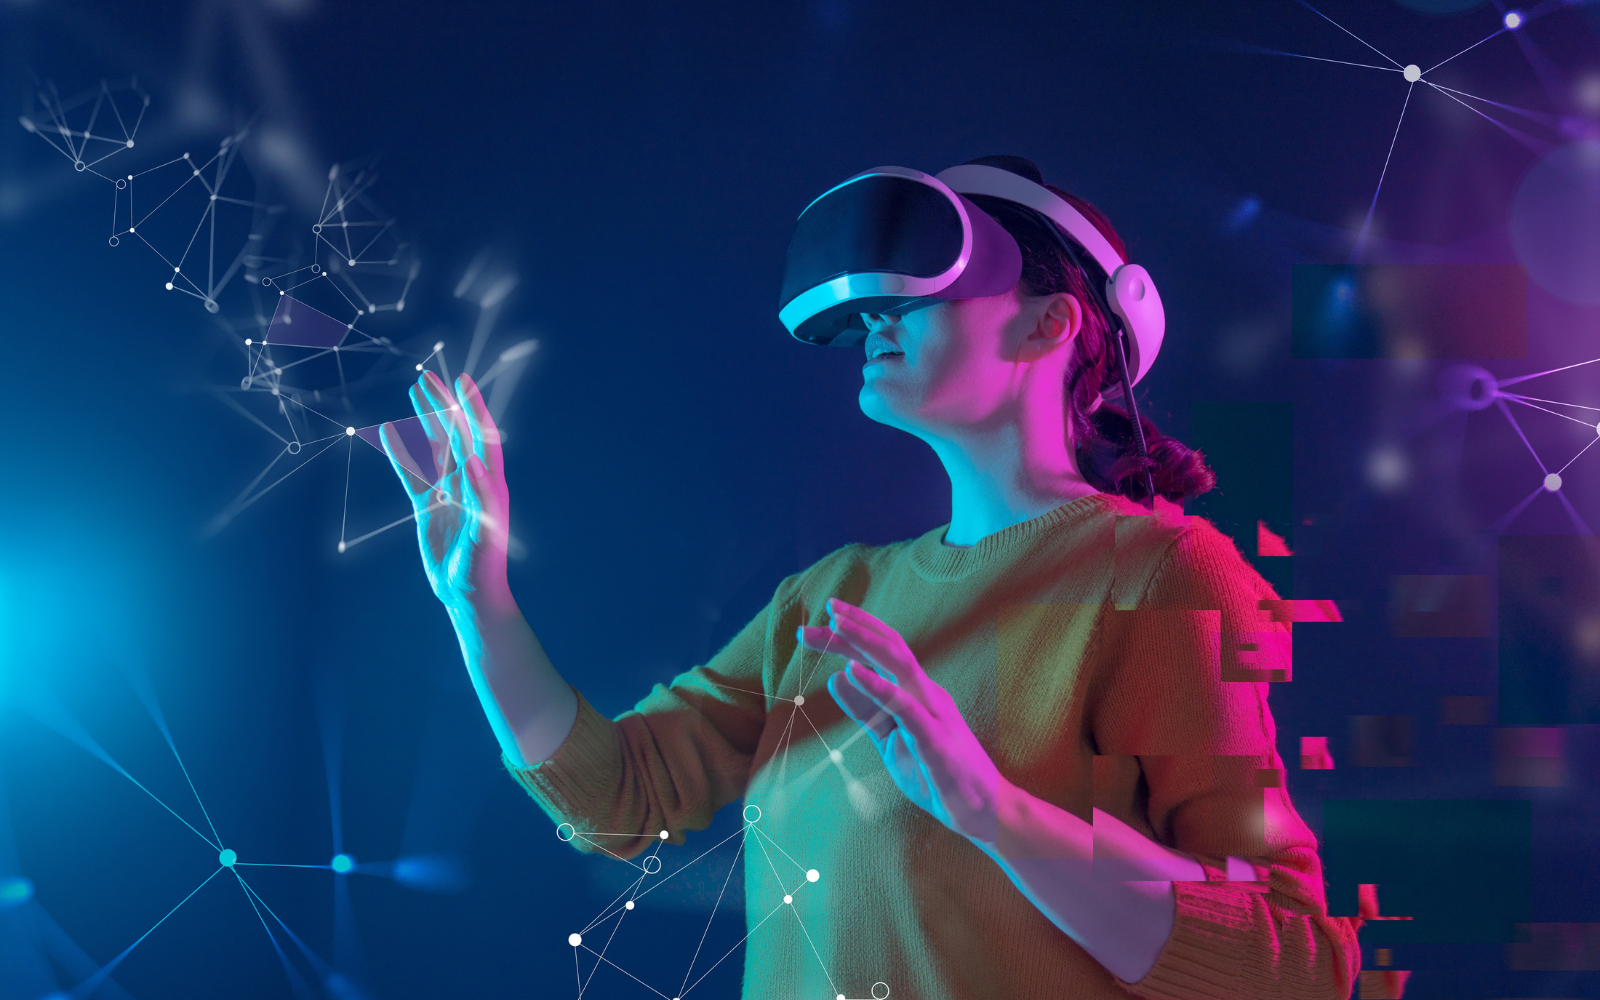 图片展示一位女性佩戴虚拟现实头盔，正伸手触摸光点，身处数字化虚构空间，表情专注，体验沉浸式科技。